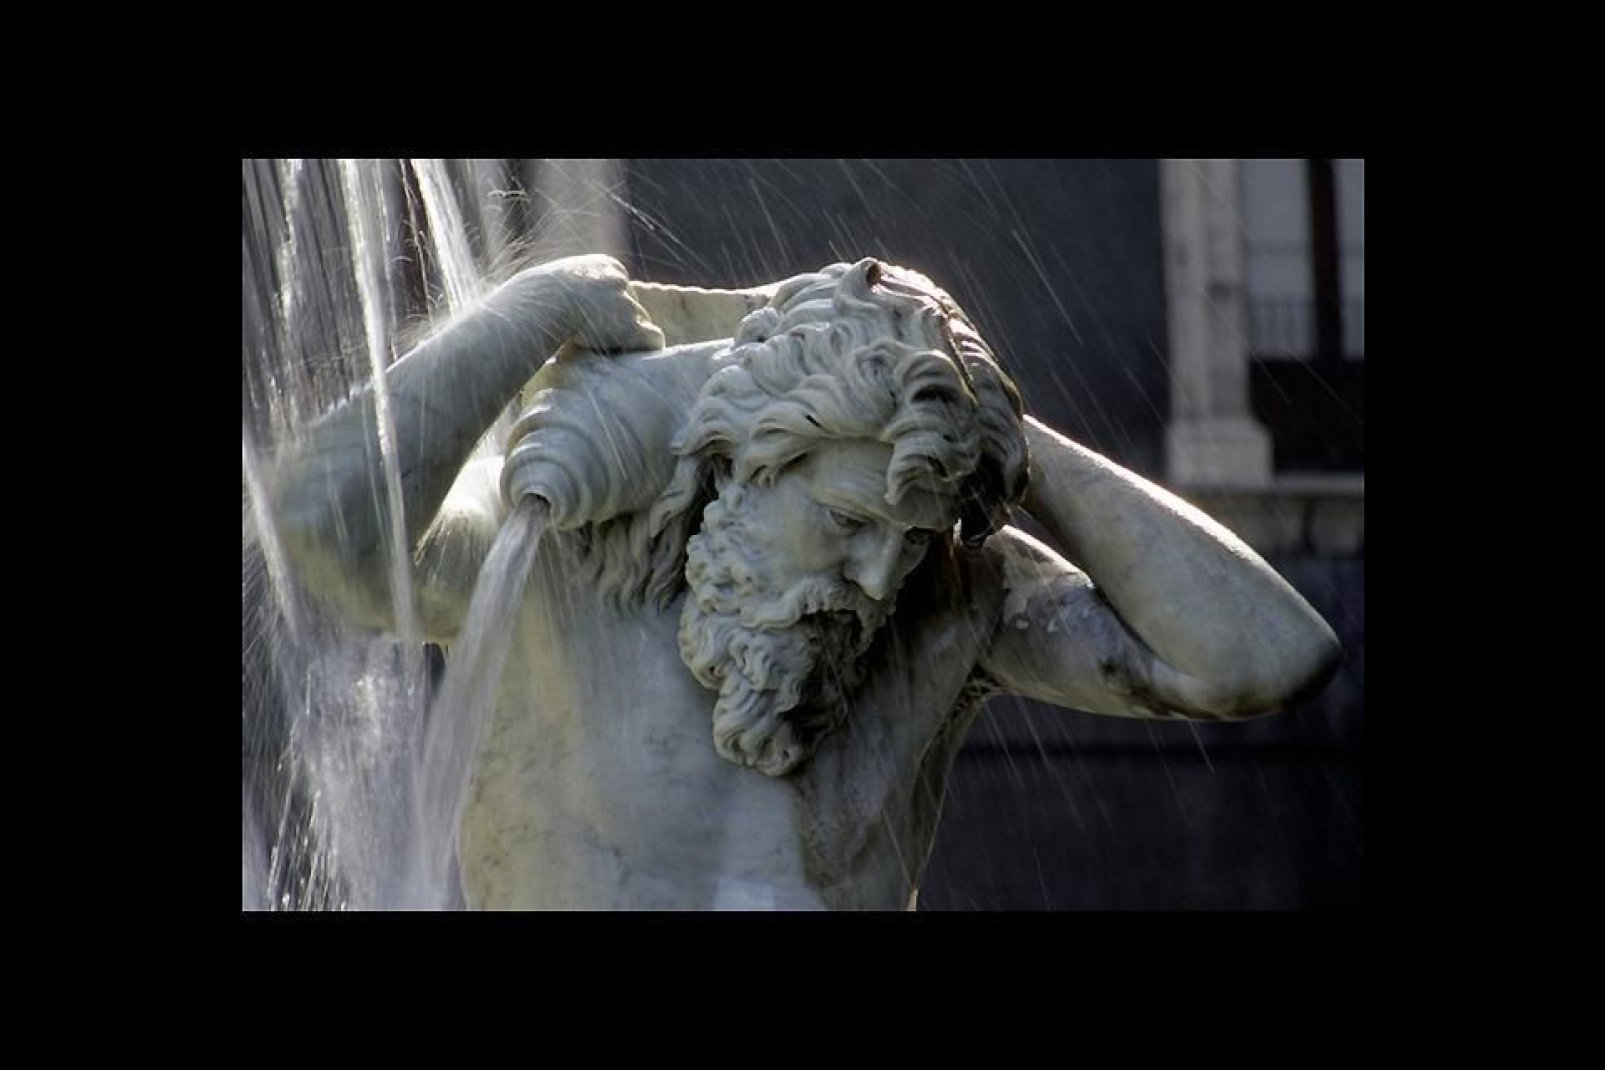 Catania possiede numerose fontane monumentali. Nella fotografia un particolare della fontana dell'Amenano in Piazza Duomo